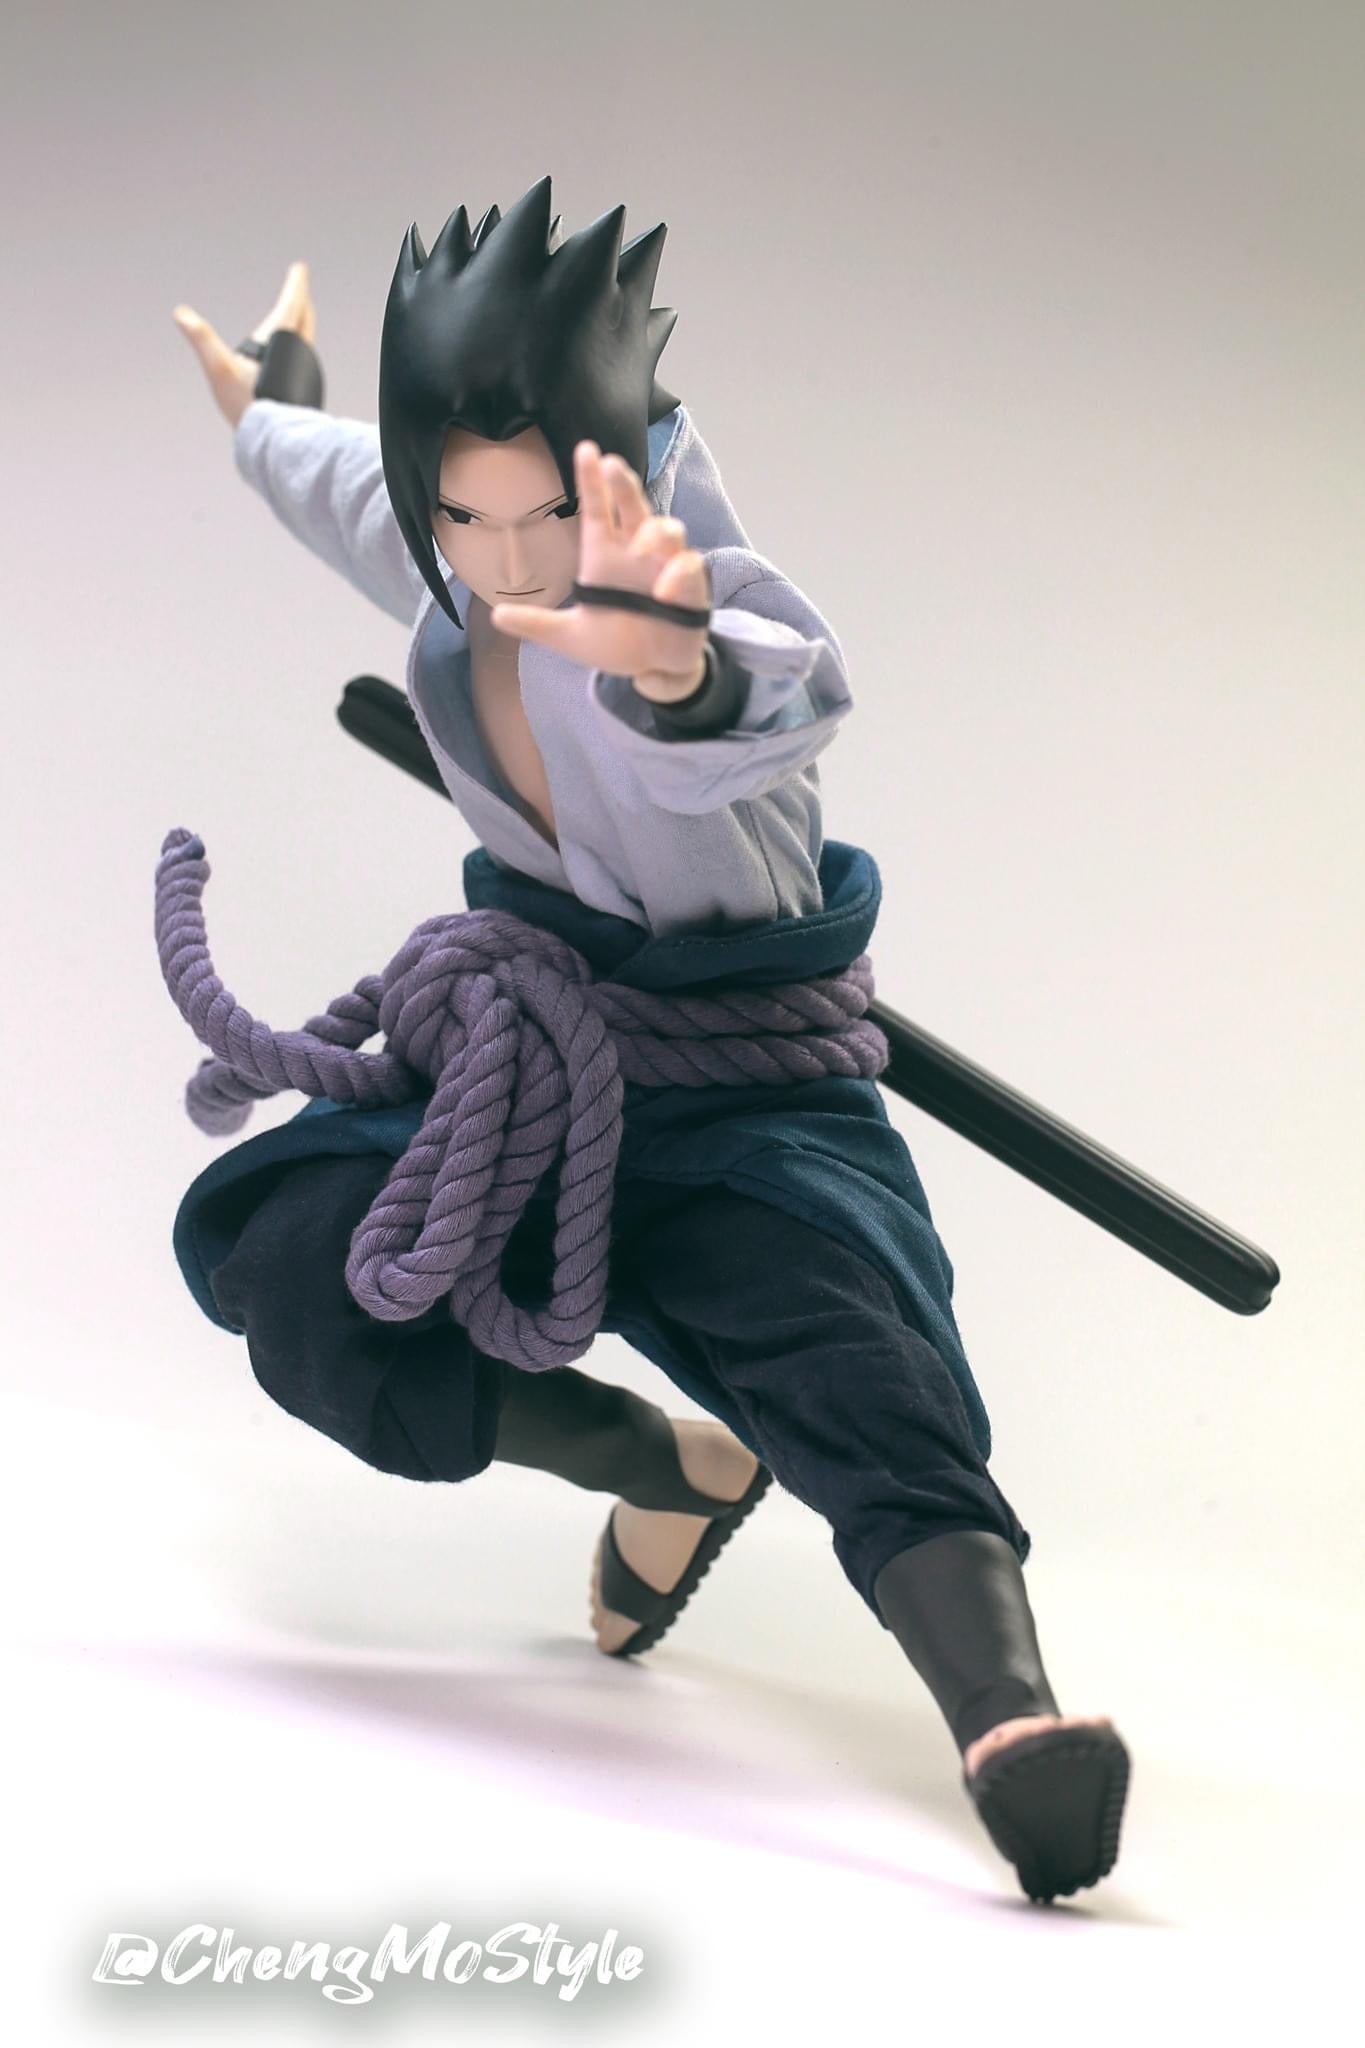 Pedido Figura Sasuke Uchiha - Naruto Shippuden marca Zen Creations PAF003 escala 1/6